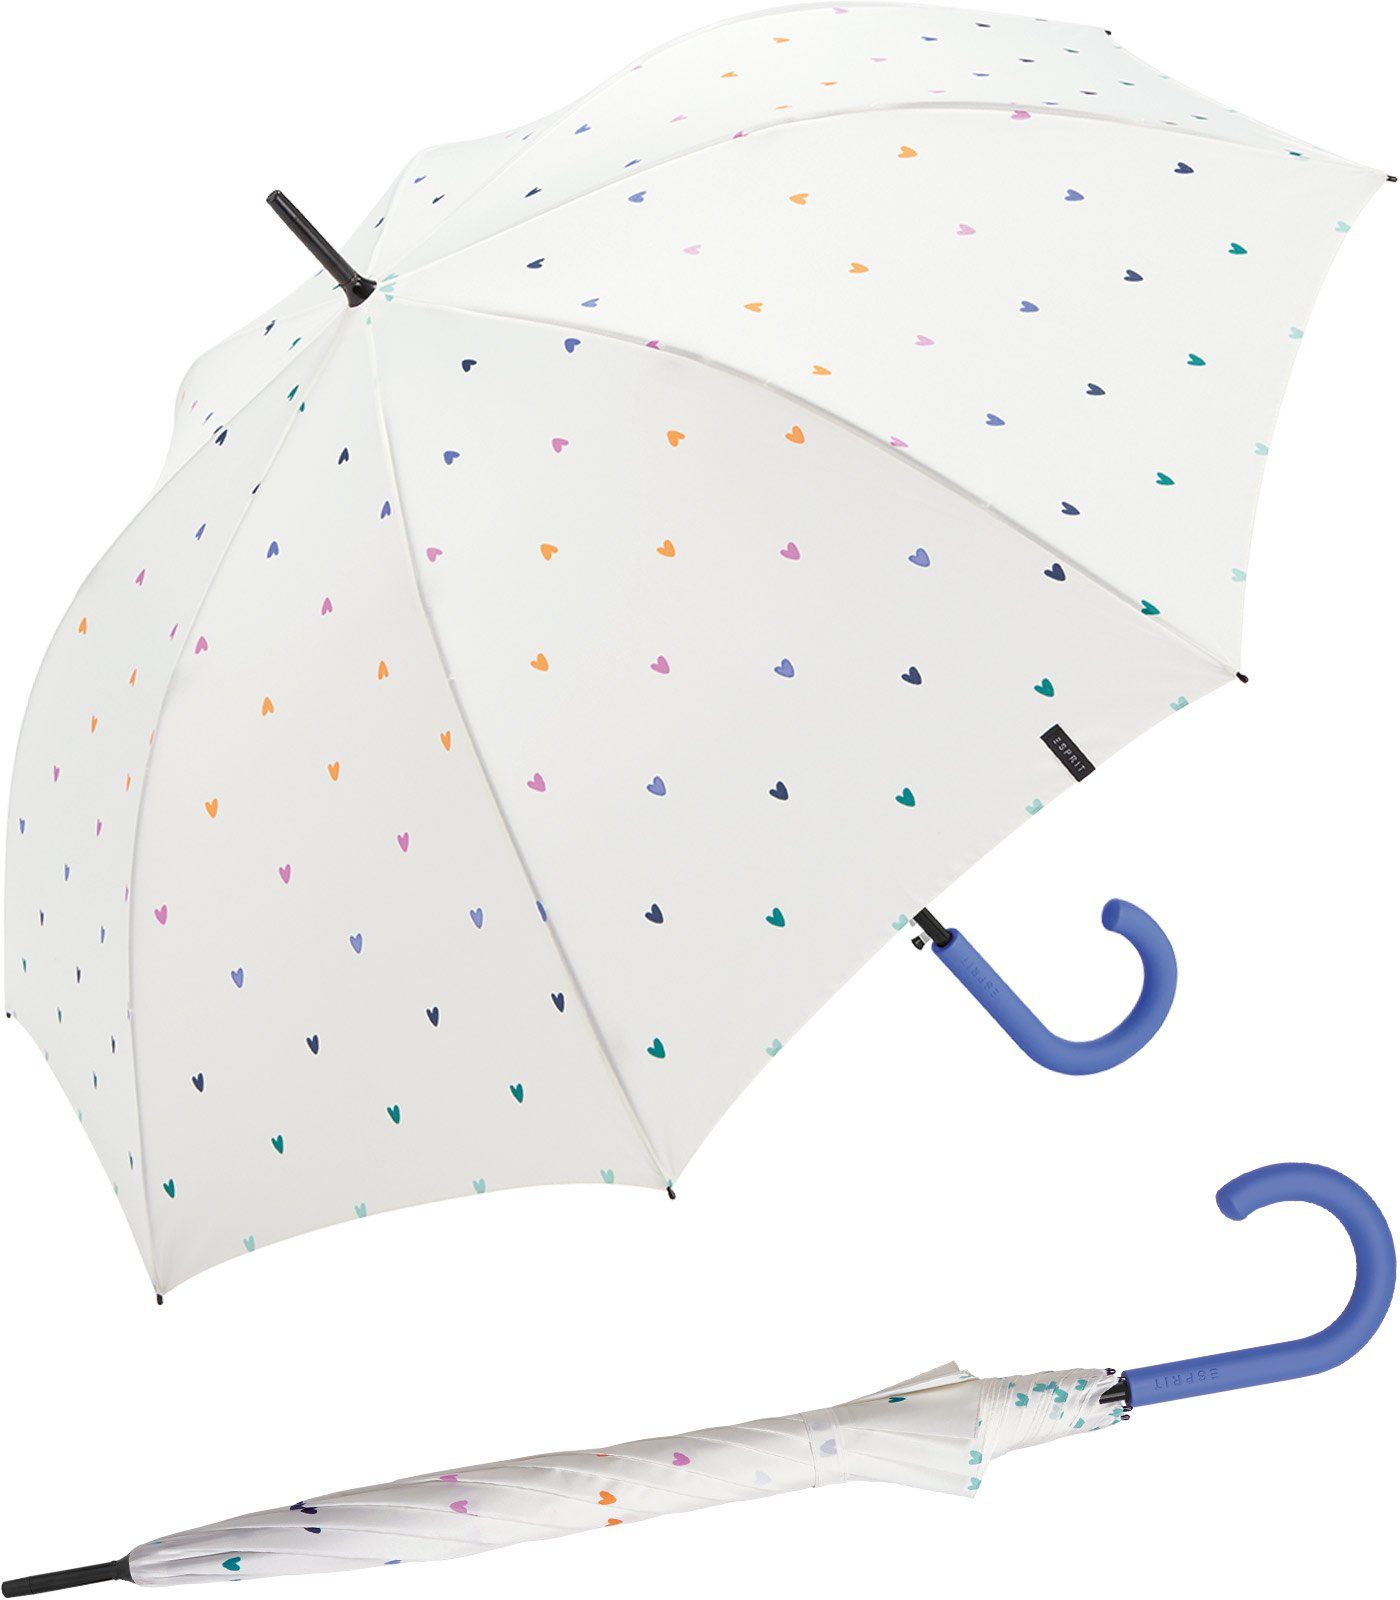 Damen Esprit bunten Langregenschirm mit Sweatheart, mit kleinen, Herzen vielen groß Automatik stabil, und Regenschirm